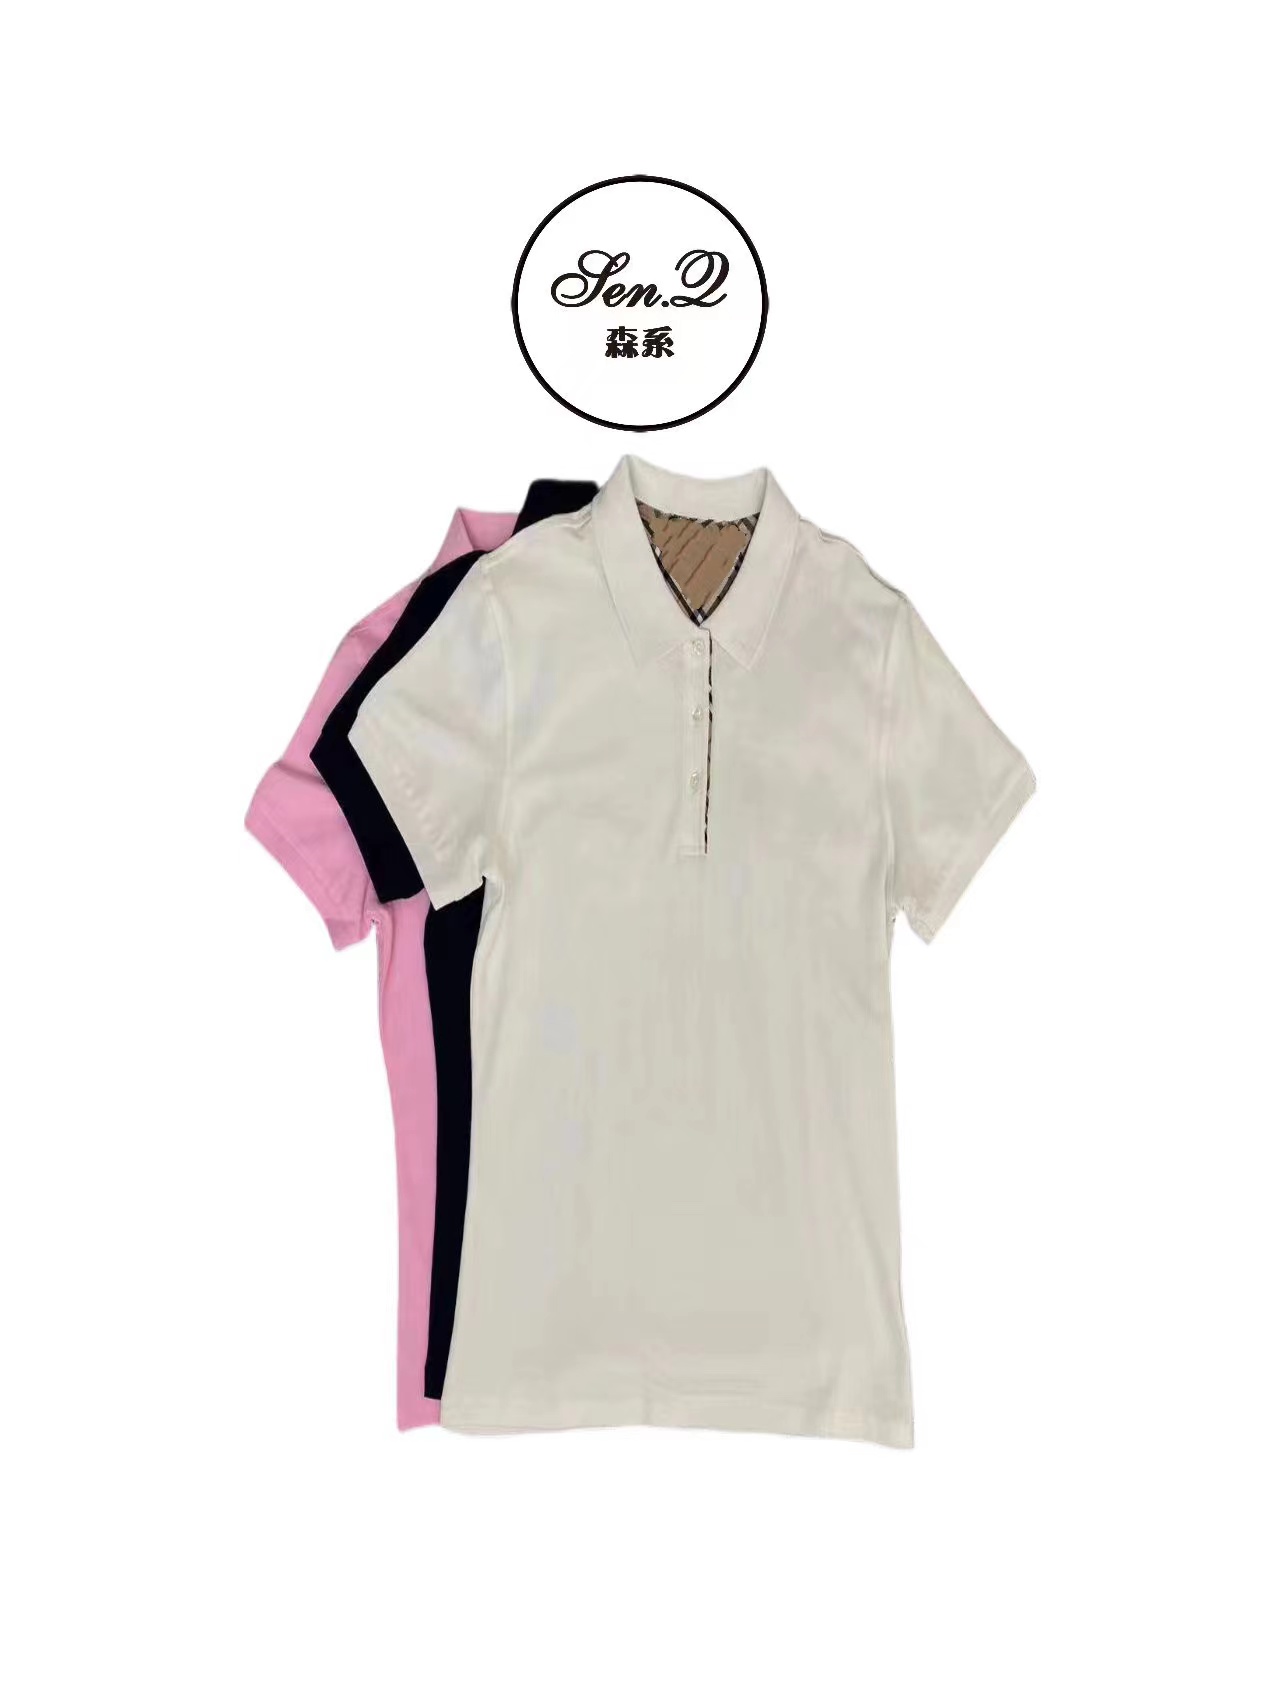 【班班严选】24夏季经典格子纯色纯棉休闲短袖POLO衫T恤S0530